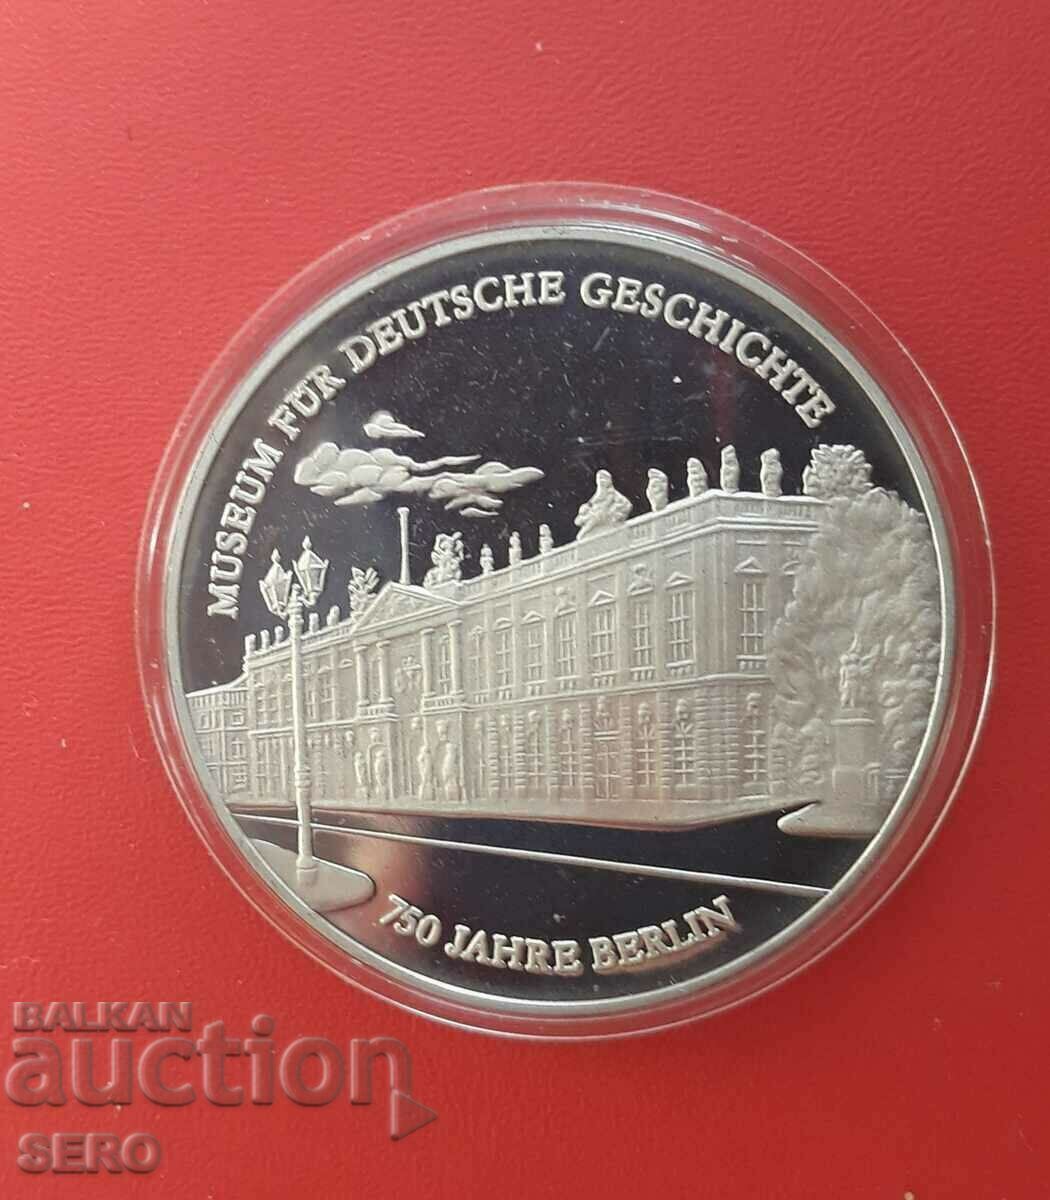 Germania-medalia-750 de ani, orașul Berlin 1987